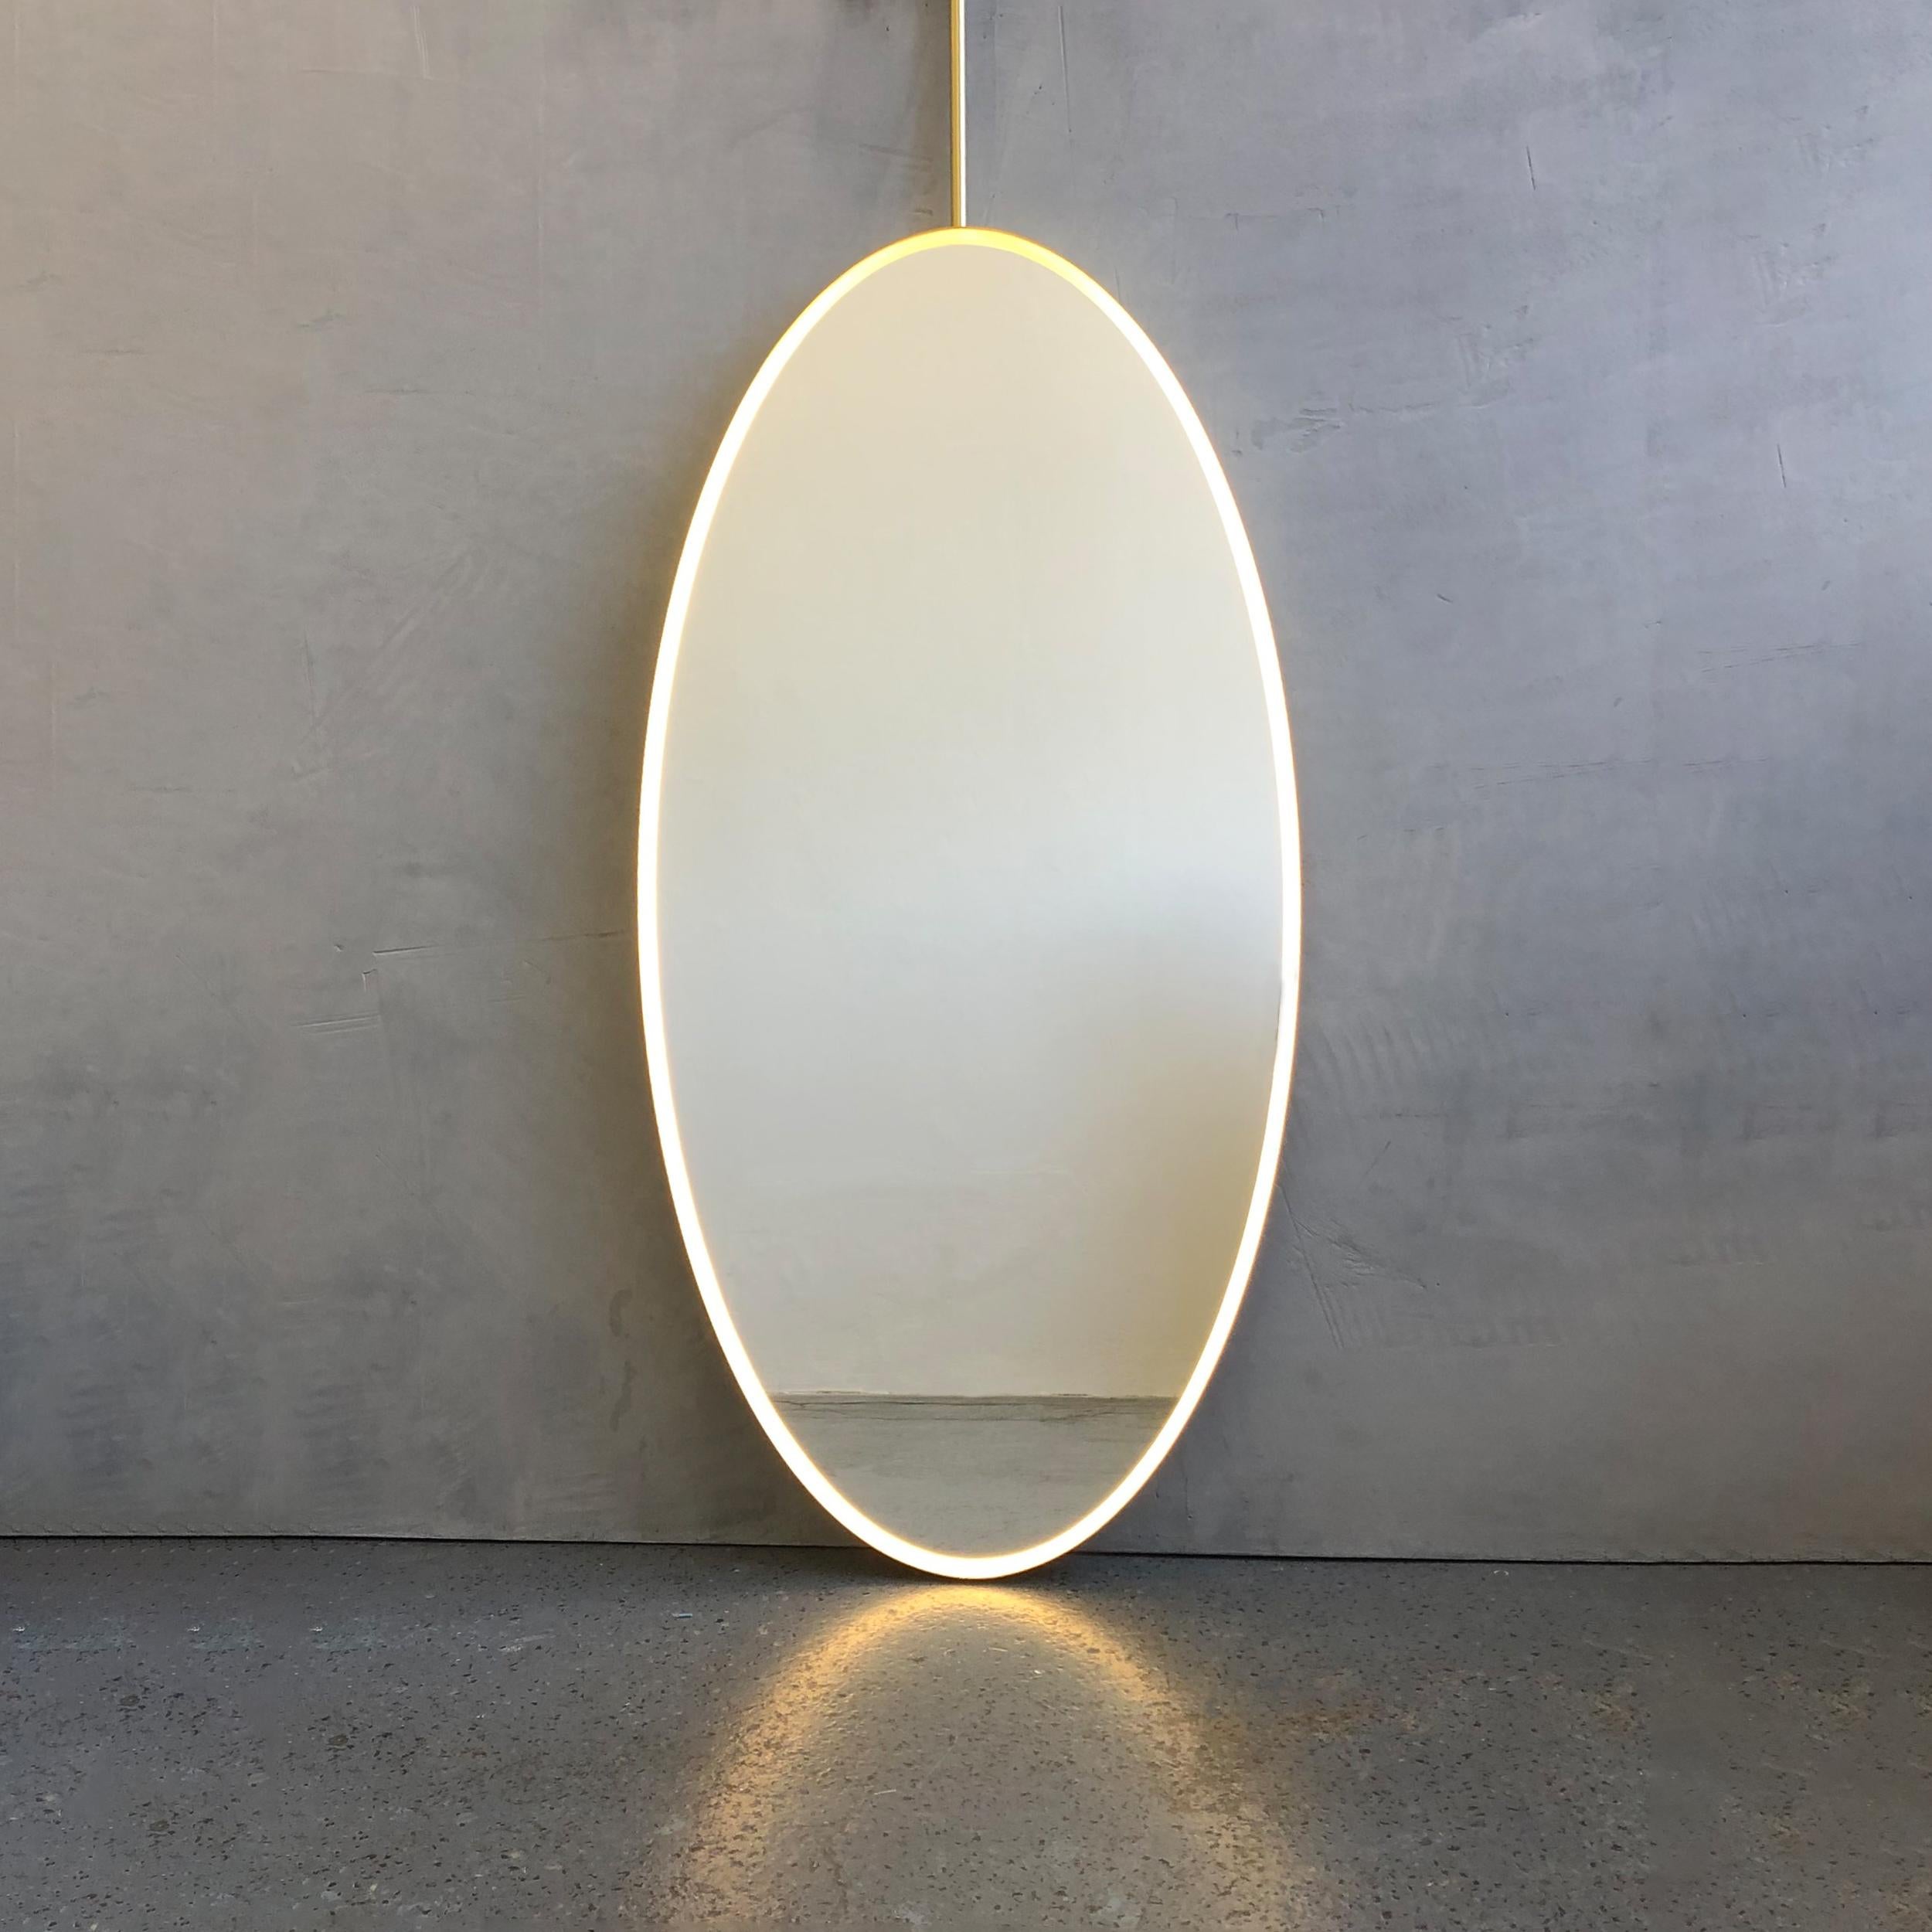 Superbe miroir de forme ovale Ovalis™ suspendu au plafond avec un élégant cadre en laiton brossé et un éclairage frontal sur un côté.

Dimensions du miroir : 100cm (39.4